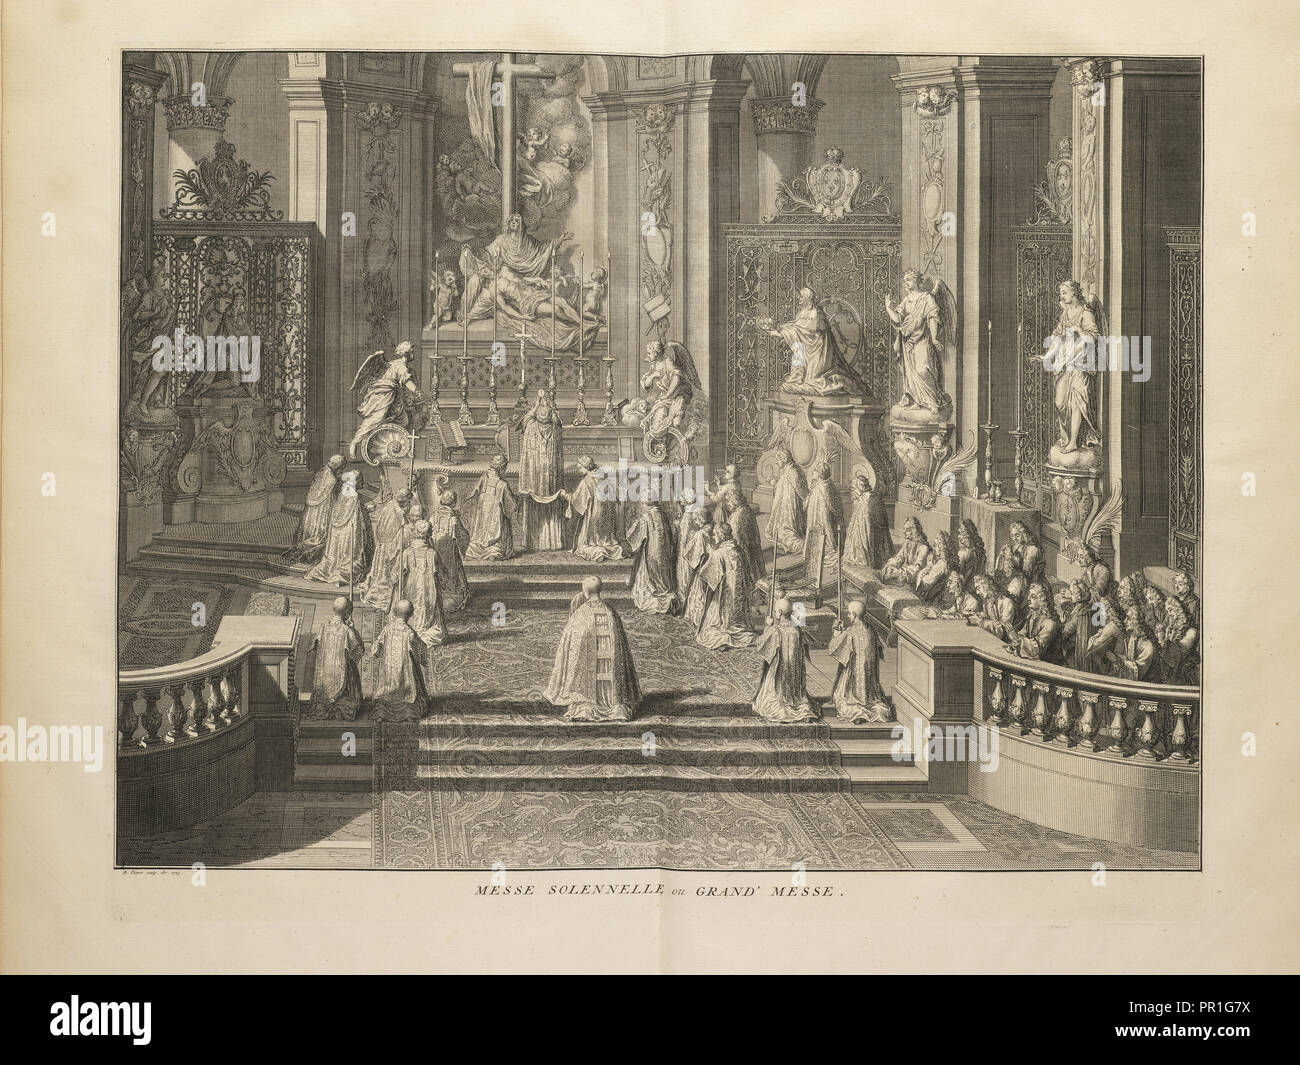 Messe solennelle, ou, Grand messe, Ceremonies et coutumes religieuses de tous les peuples du monde, Picart, Bernard, 1673-1733 Stock Photo